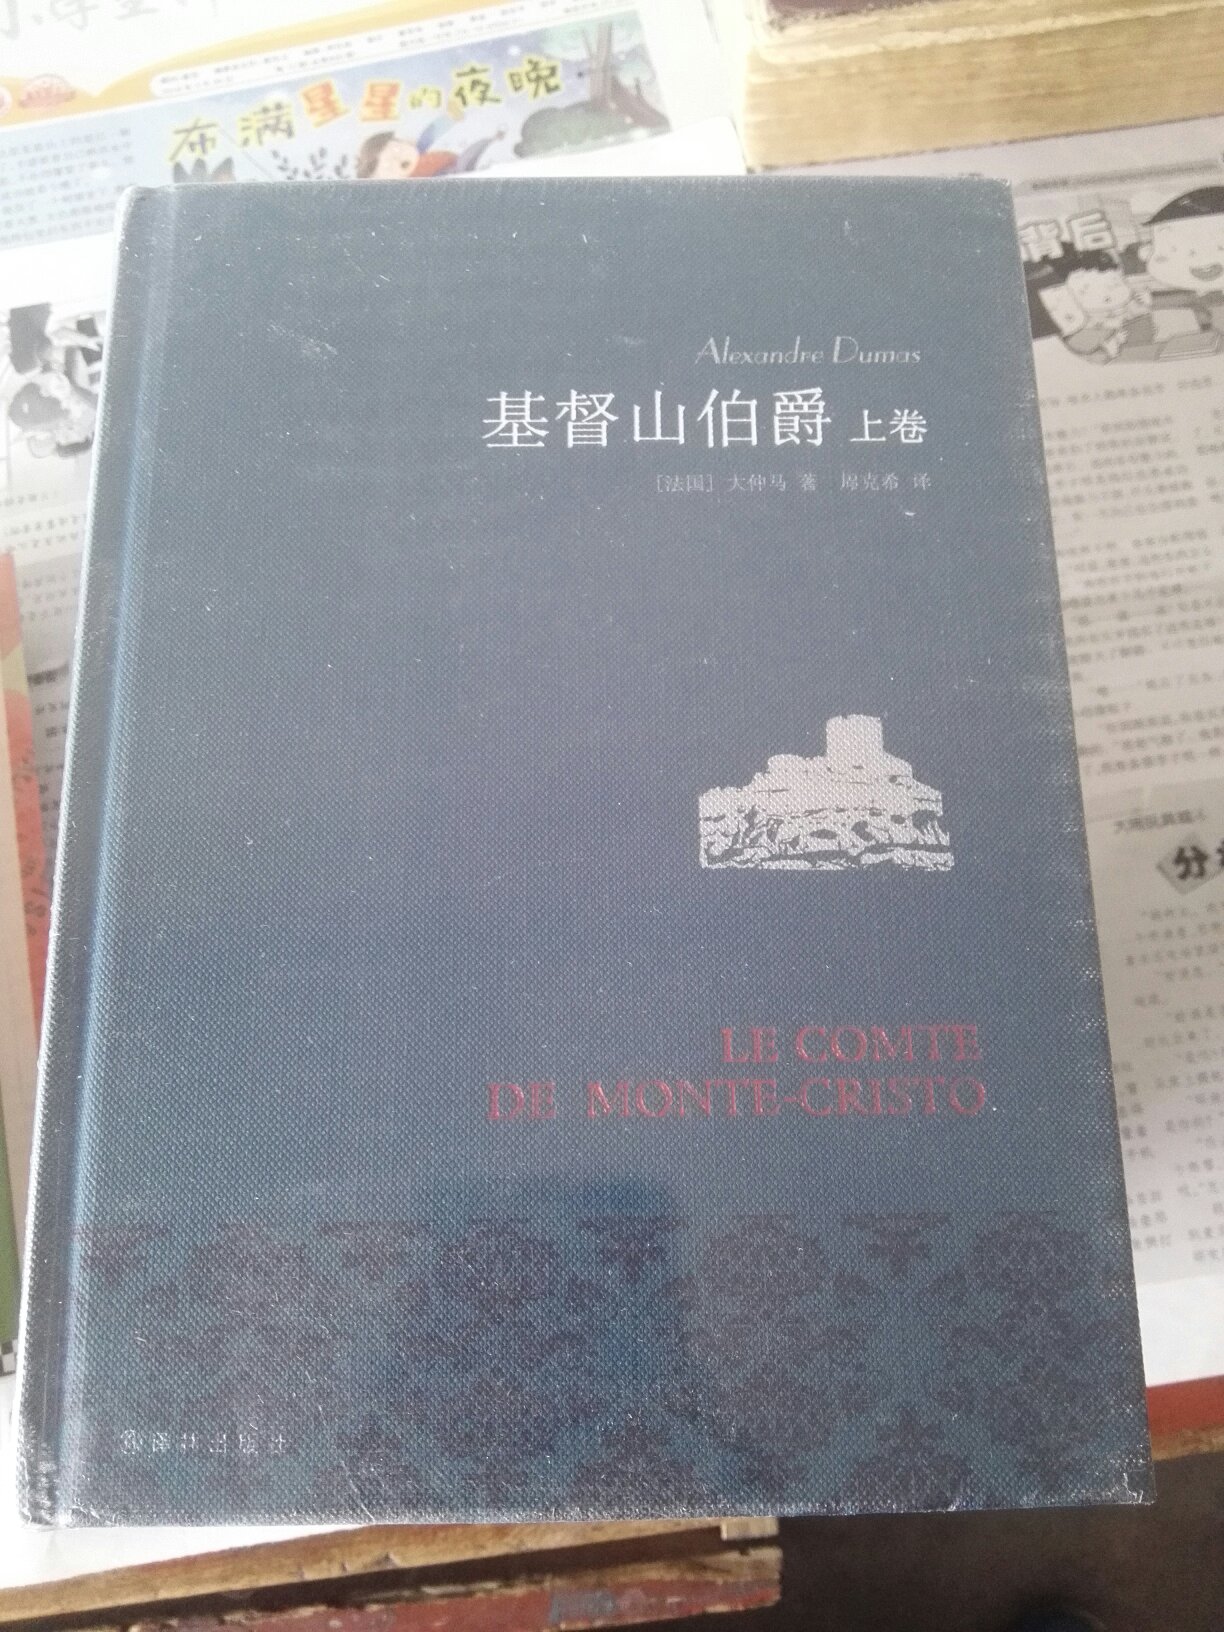 这本书内容翻译的还行，有些确实挺符合中文的，但是一些语气助词真的翻译的太差了，完全不合语境